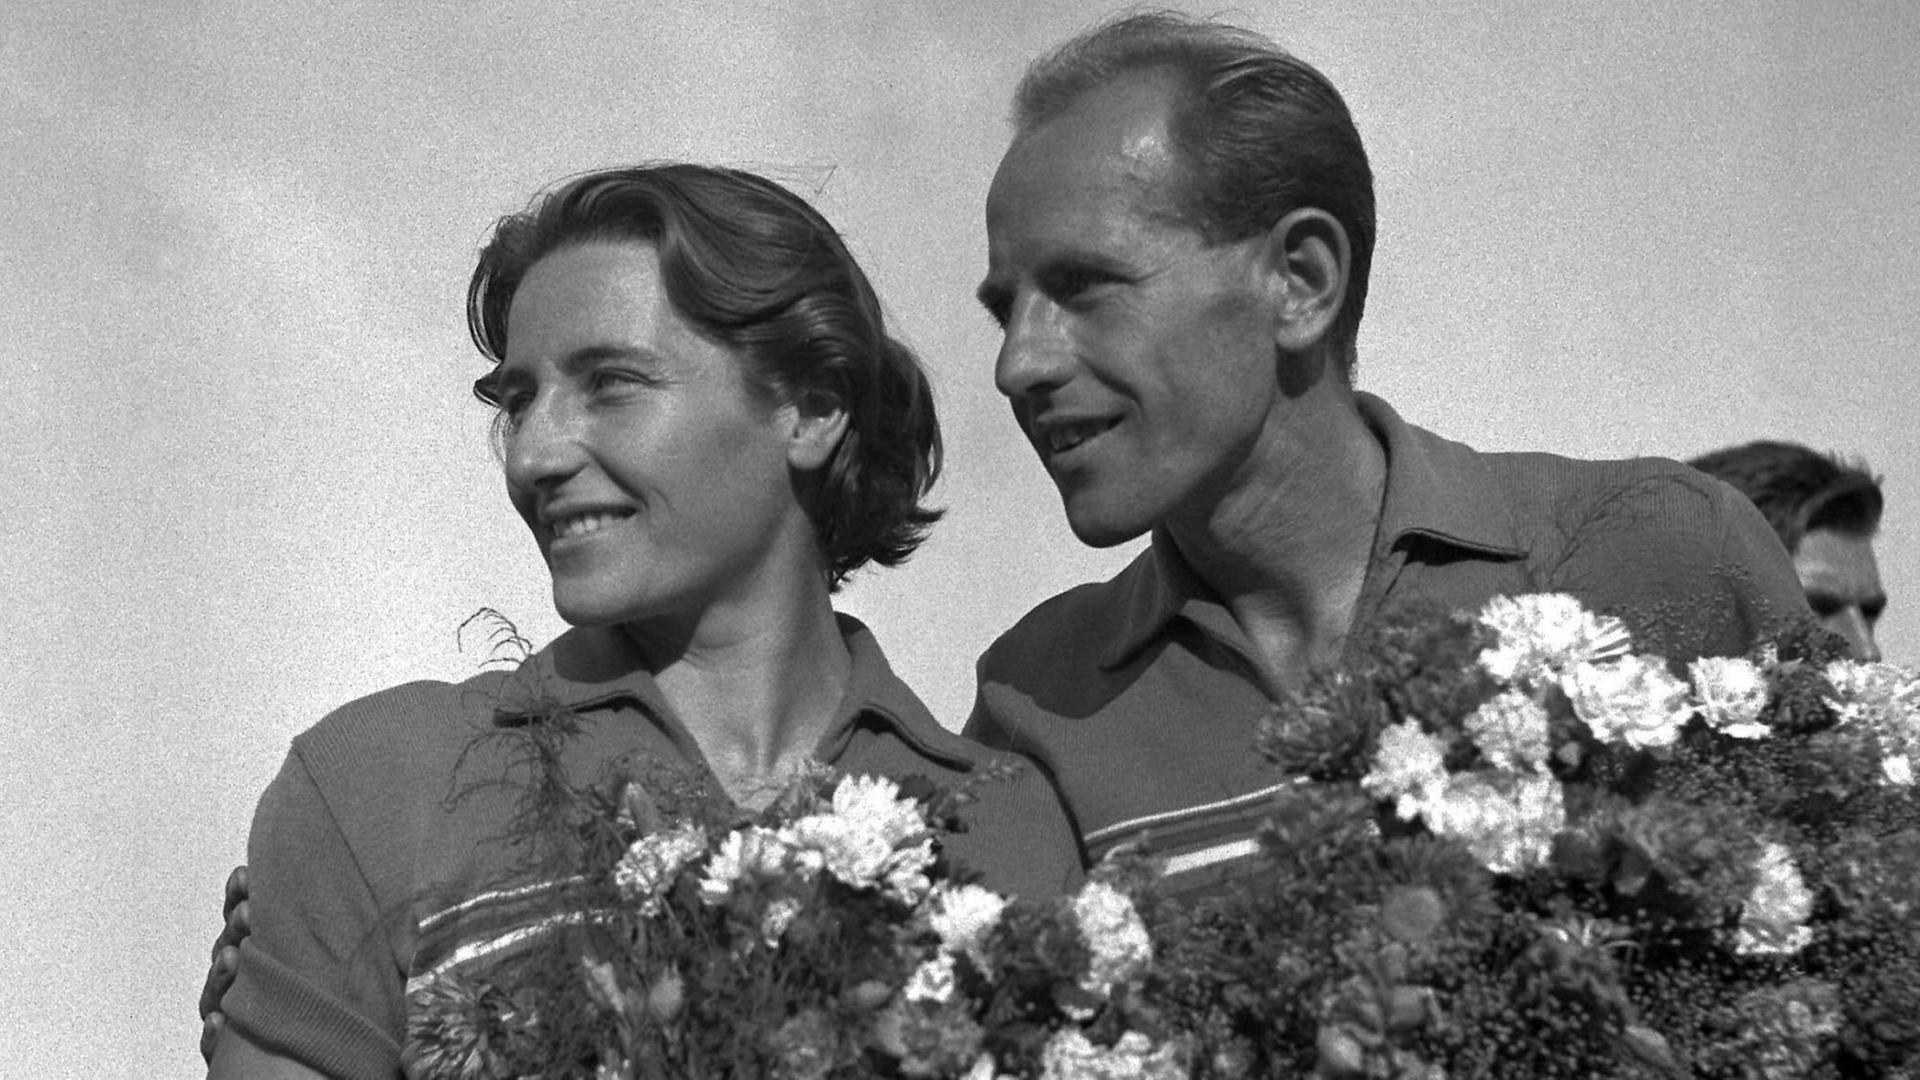 Der Langstreckenläufer Emil Zátopek und seine Frau, die Speerwerferin Dana Zátopková, haben bei den Olympischen Spielen 1952 zusammen vier Goldmedaillen gewonnen.